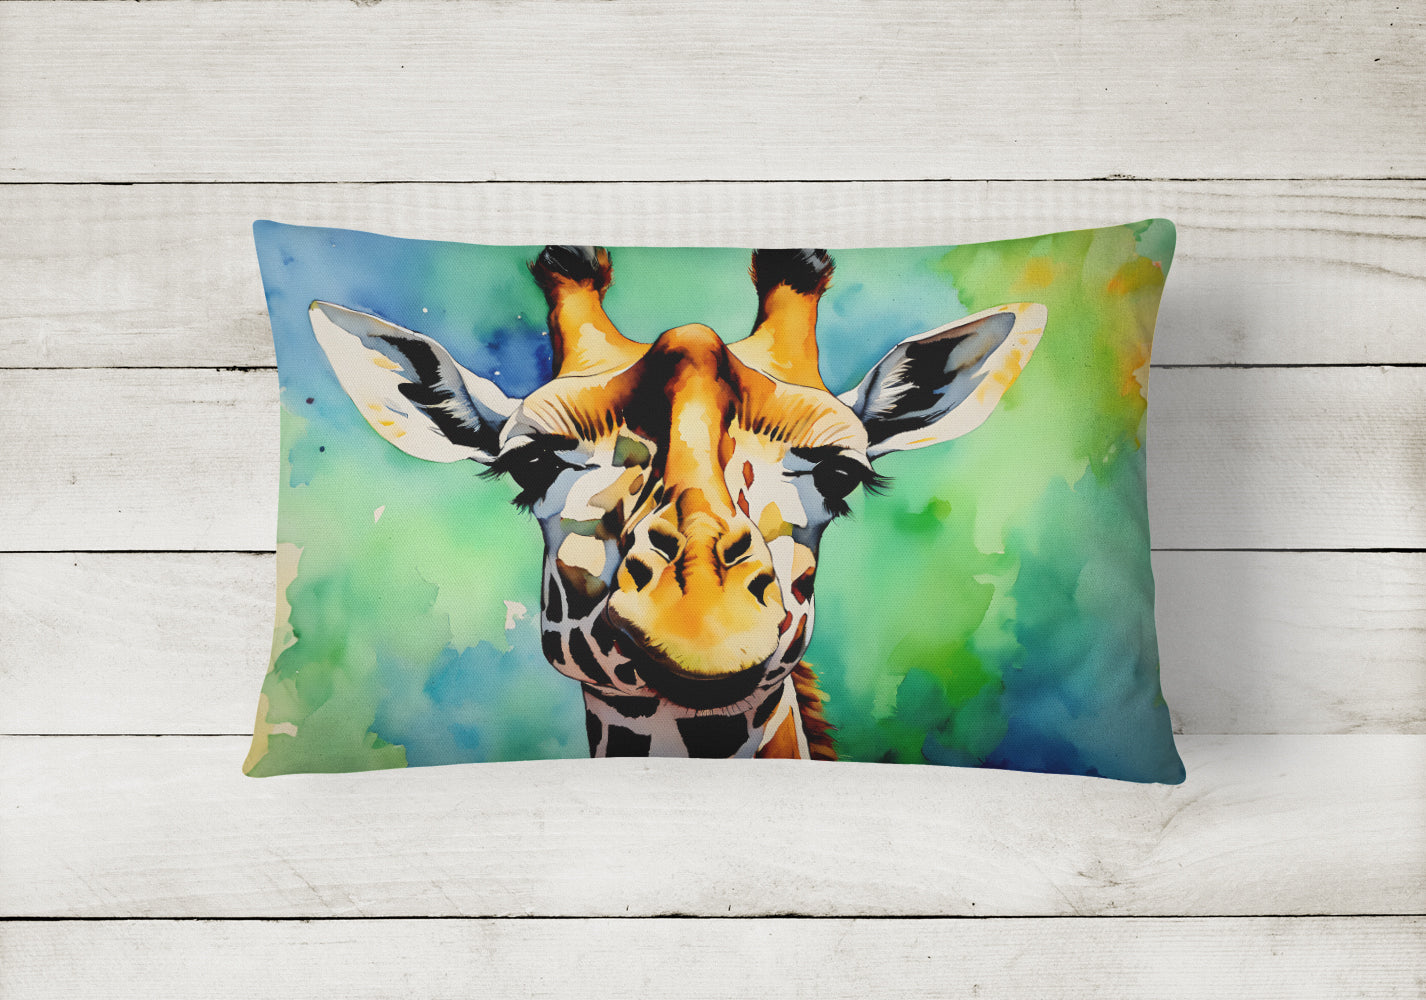 Giraffe Throw Pillow